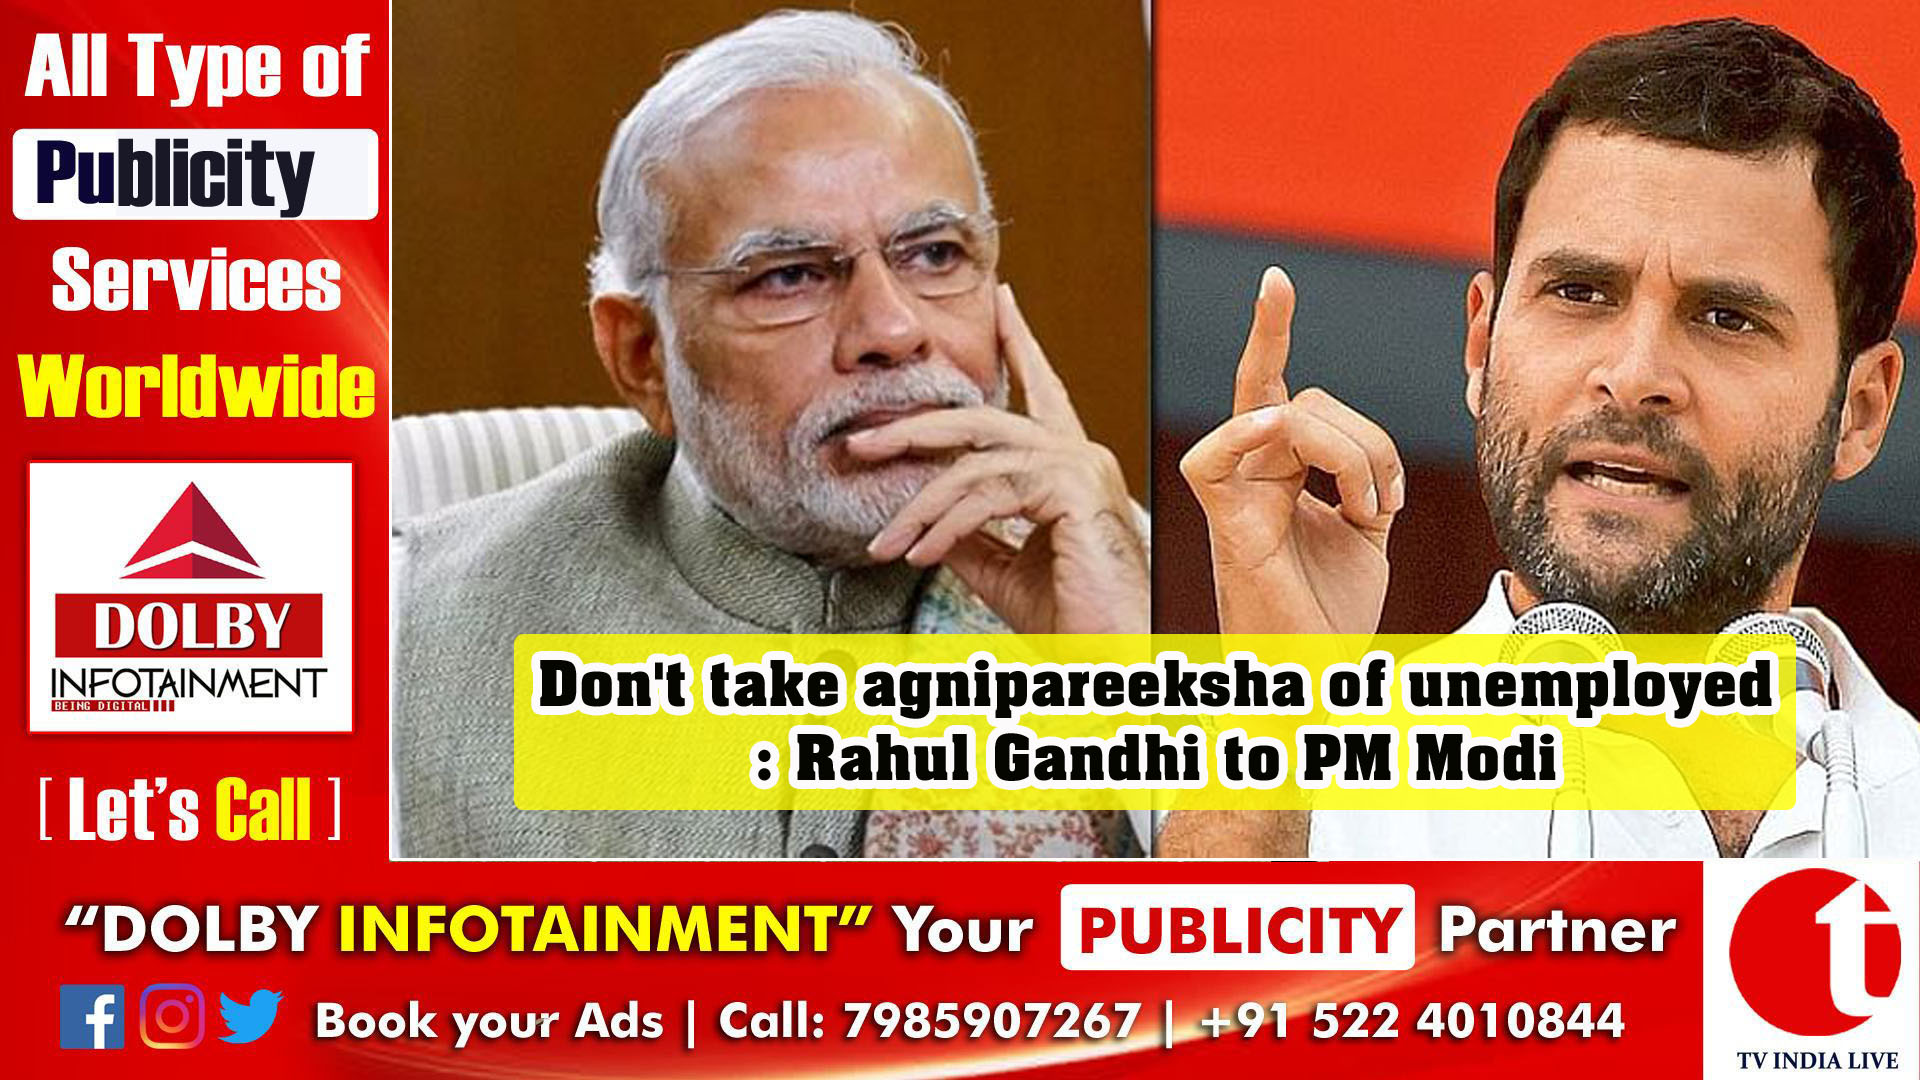 Don't take agnipareeksha of unemployed: Rahul Gandhi to PM Modi